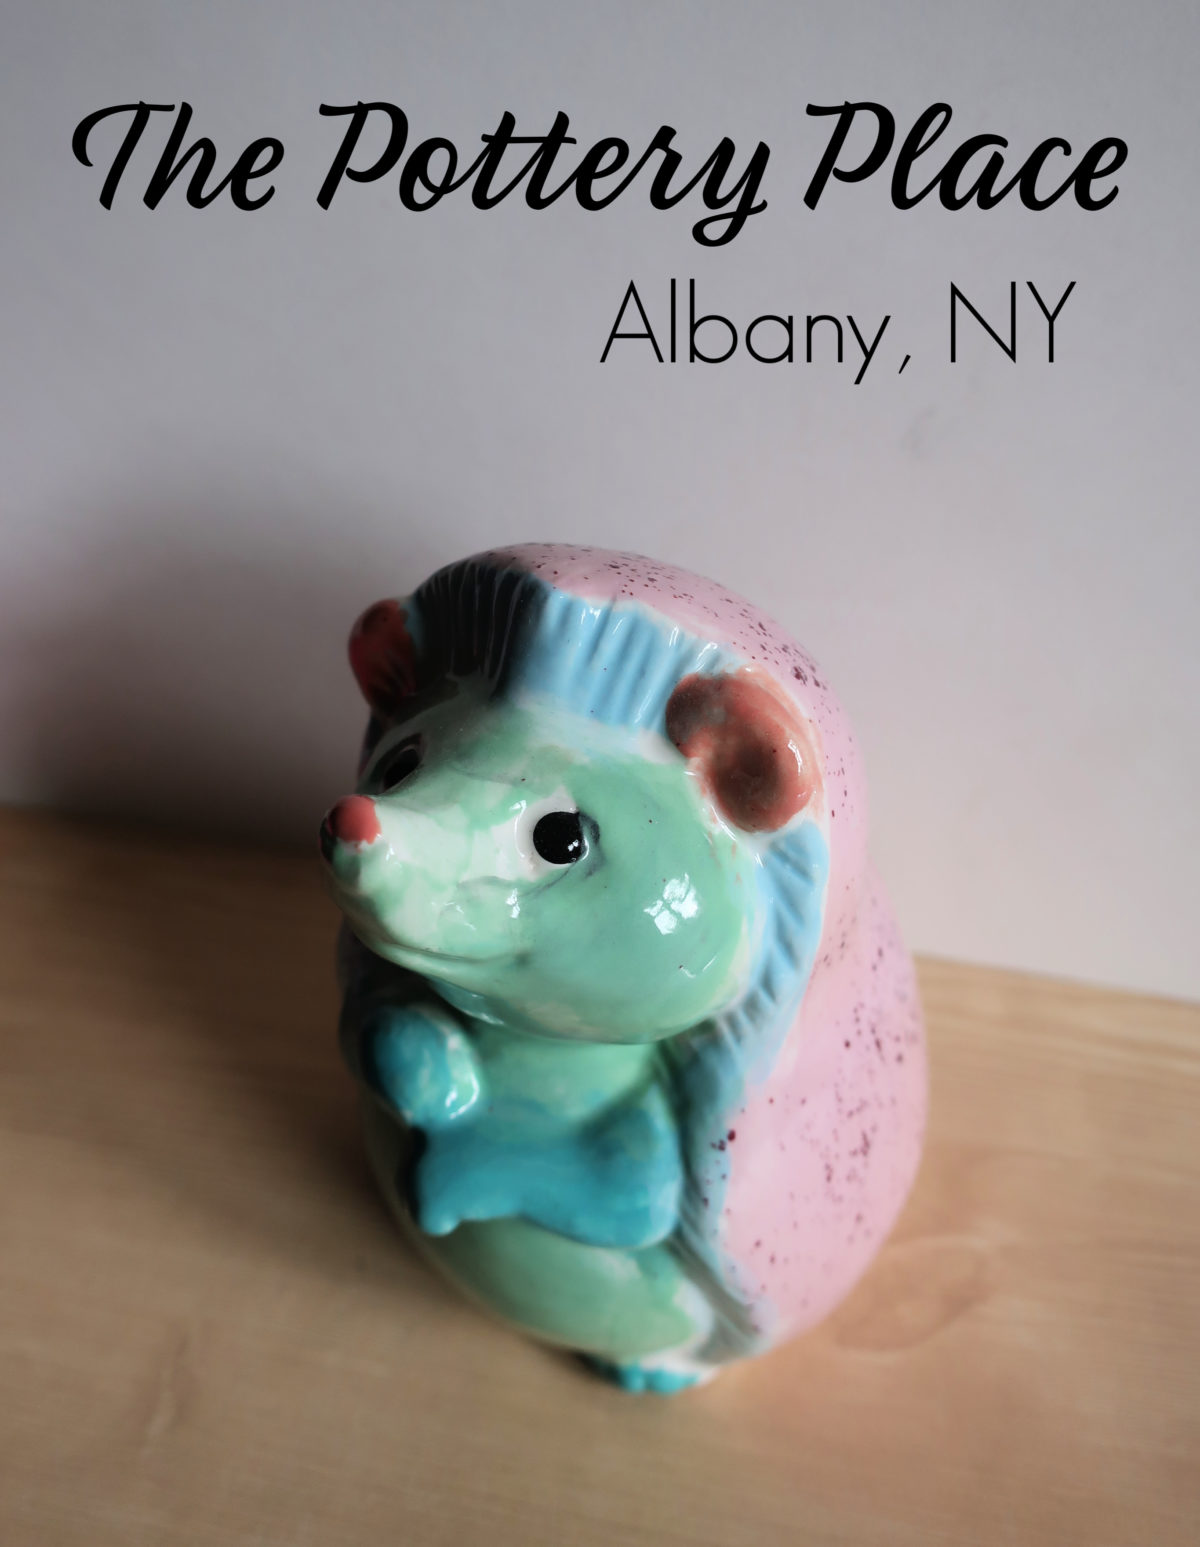 The Pottery Place Albany NY